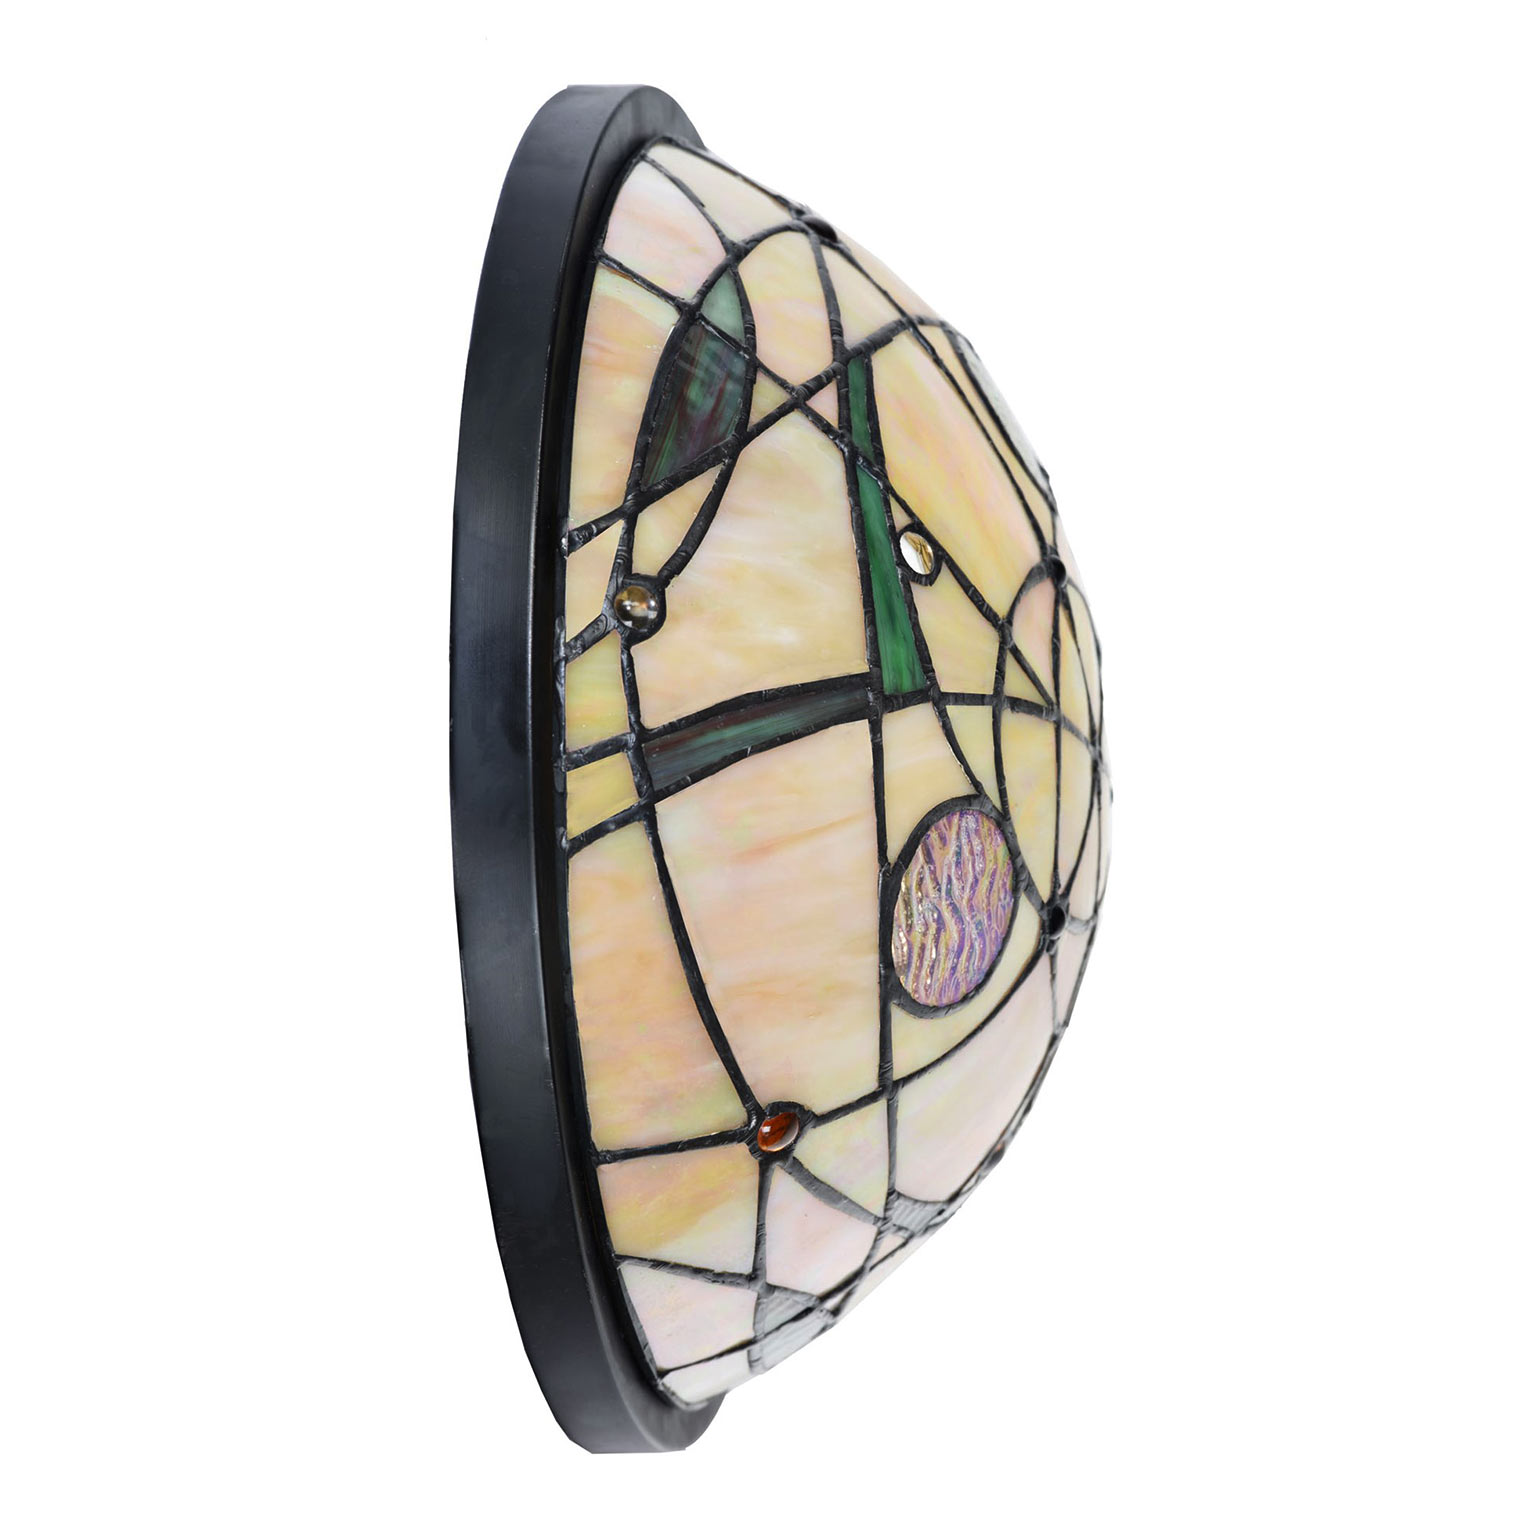 Runde Wandleuchte mit dekorativen Tiffany-Glaseinsätzen: Mit Buntglas verziert für stimmungsvolle Beleuchtung: gewölbte Tiffanyglas-Wandleuchte (ausgeschaltet)